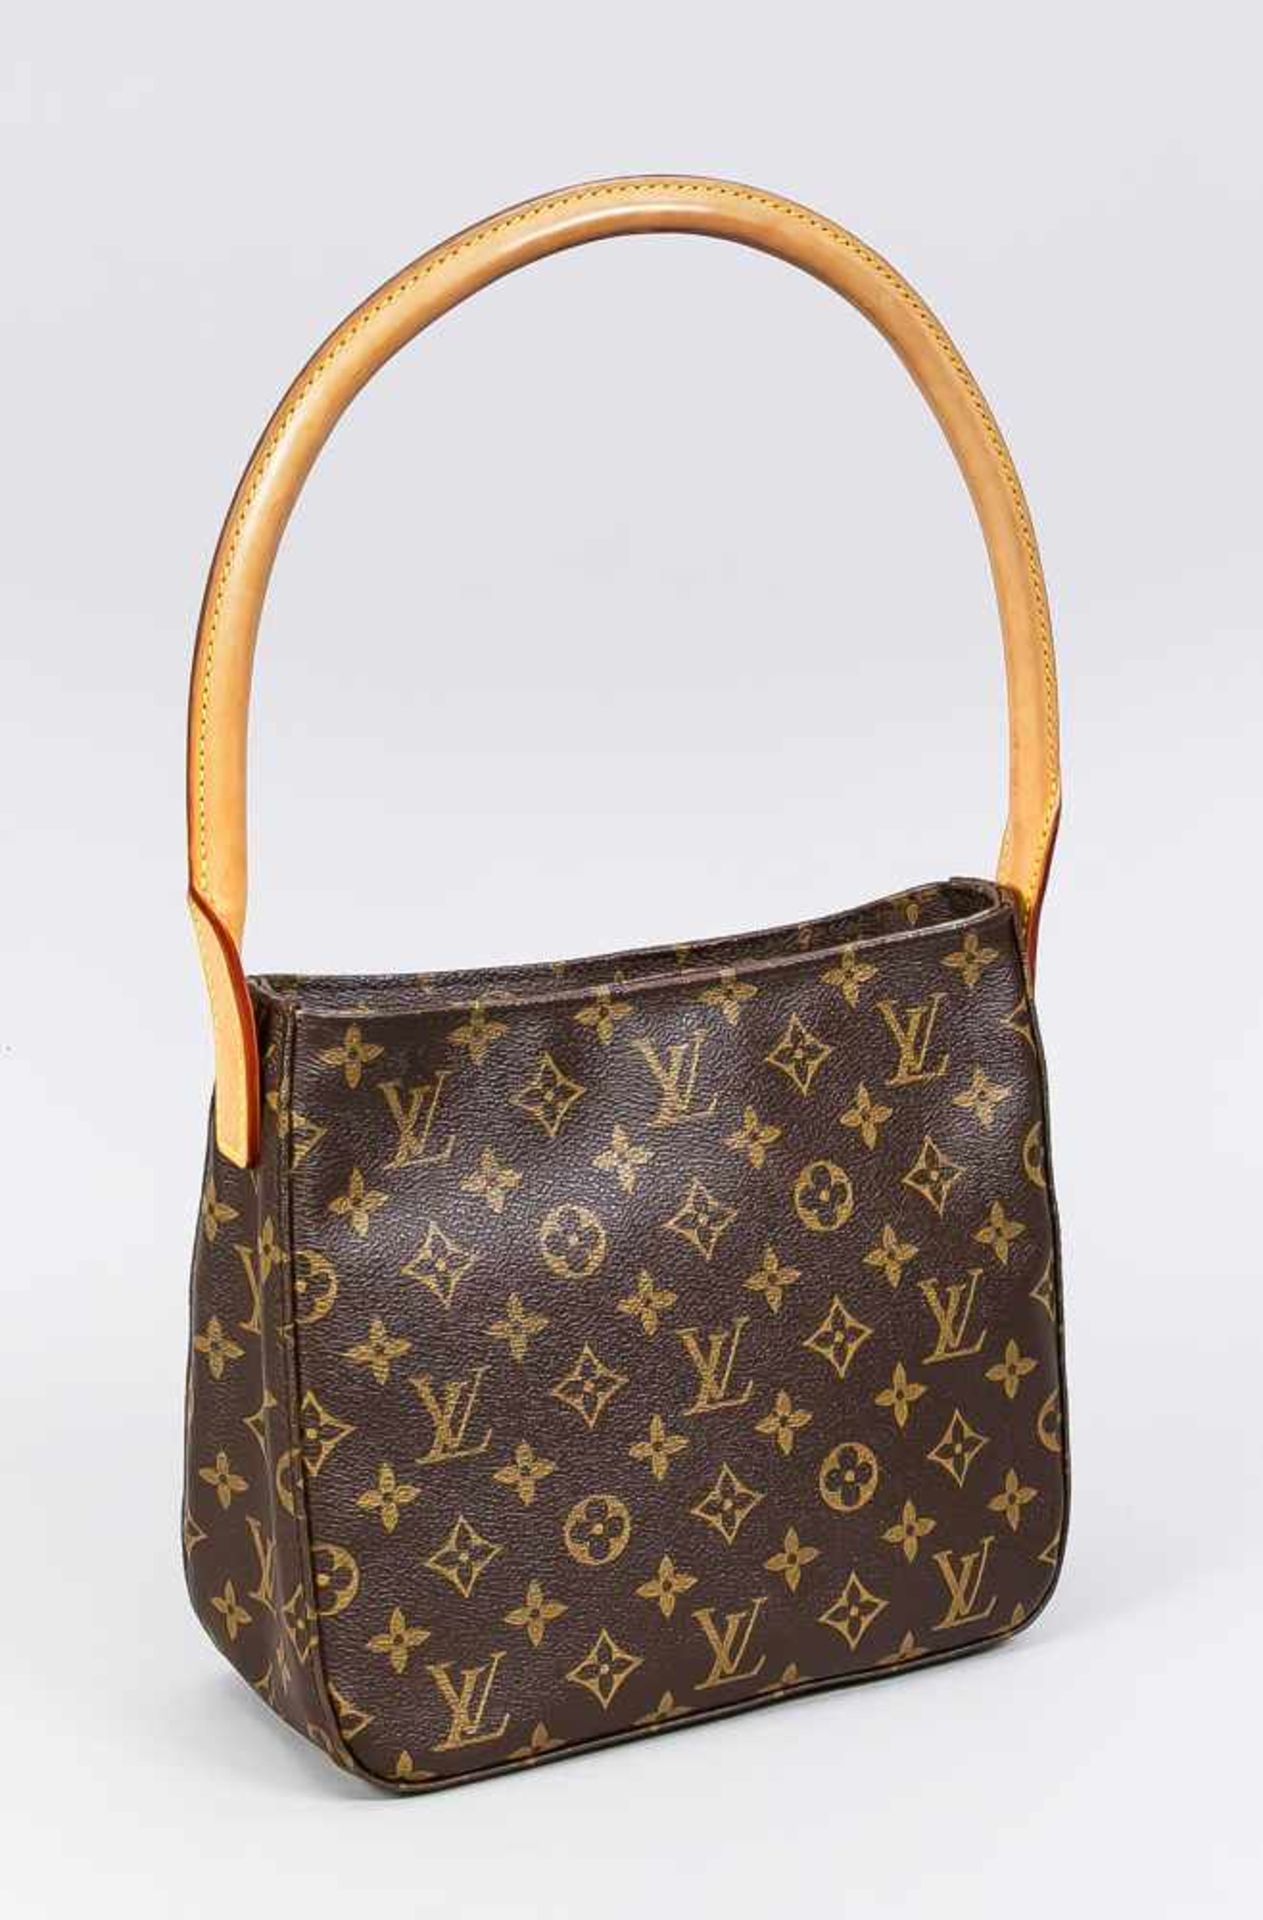 Handtasche Louis Vuitton, 20./21. Jh., Monogram Canvas. Mit Reißverschluss und weiterer